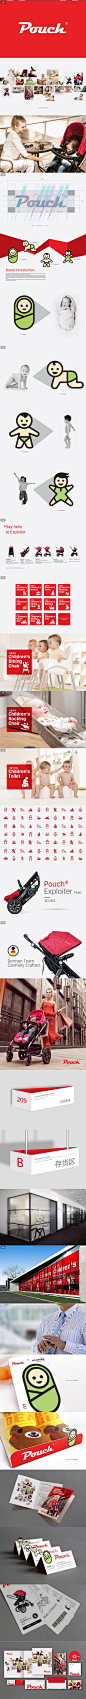 互联网童车销售冠军Pouch-vi设计_上海硕谷品牌设计有限公司作品